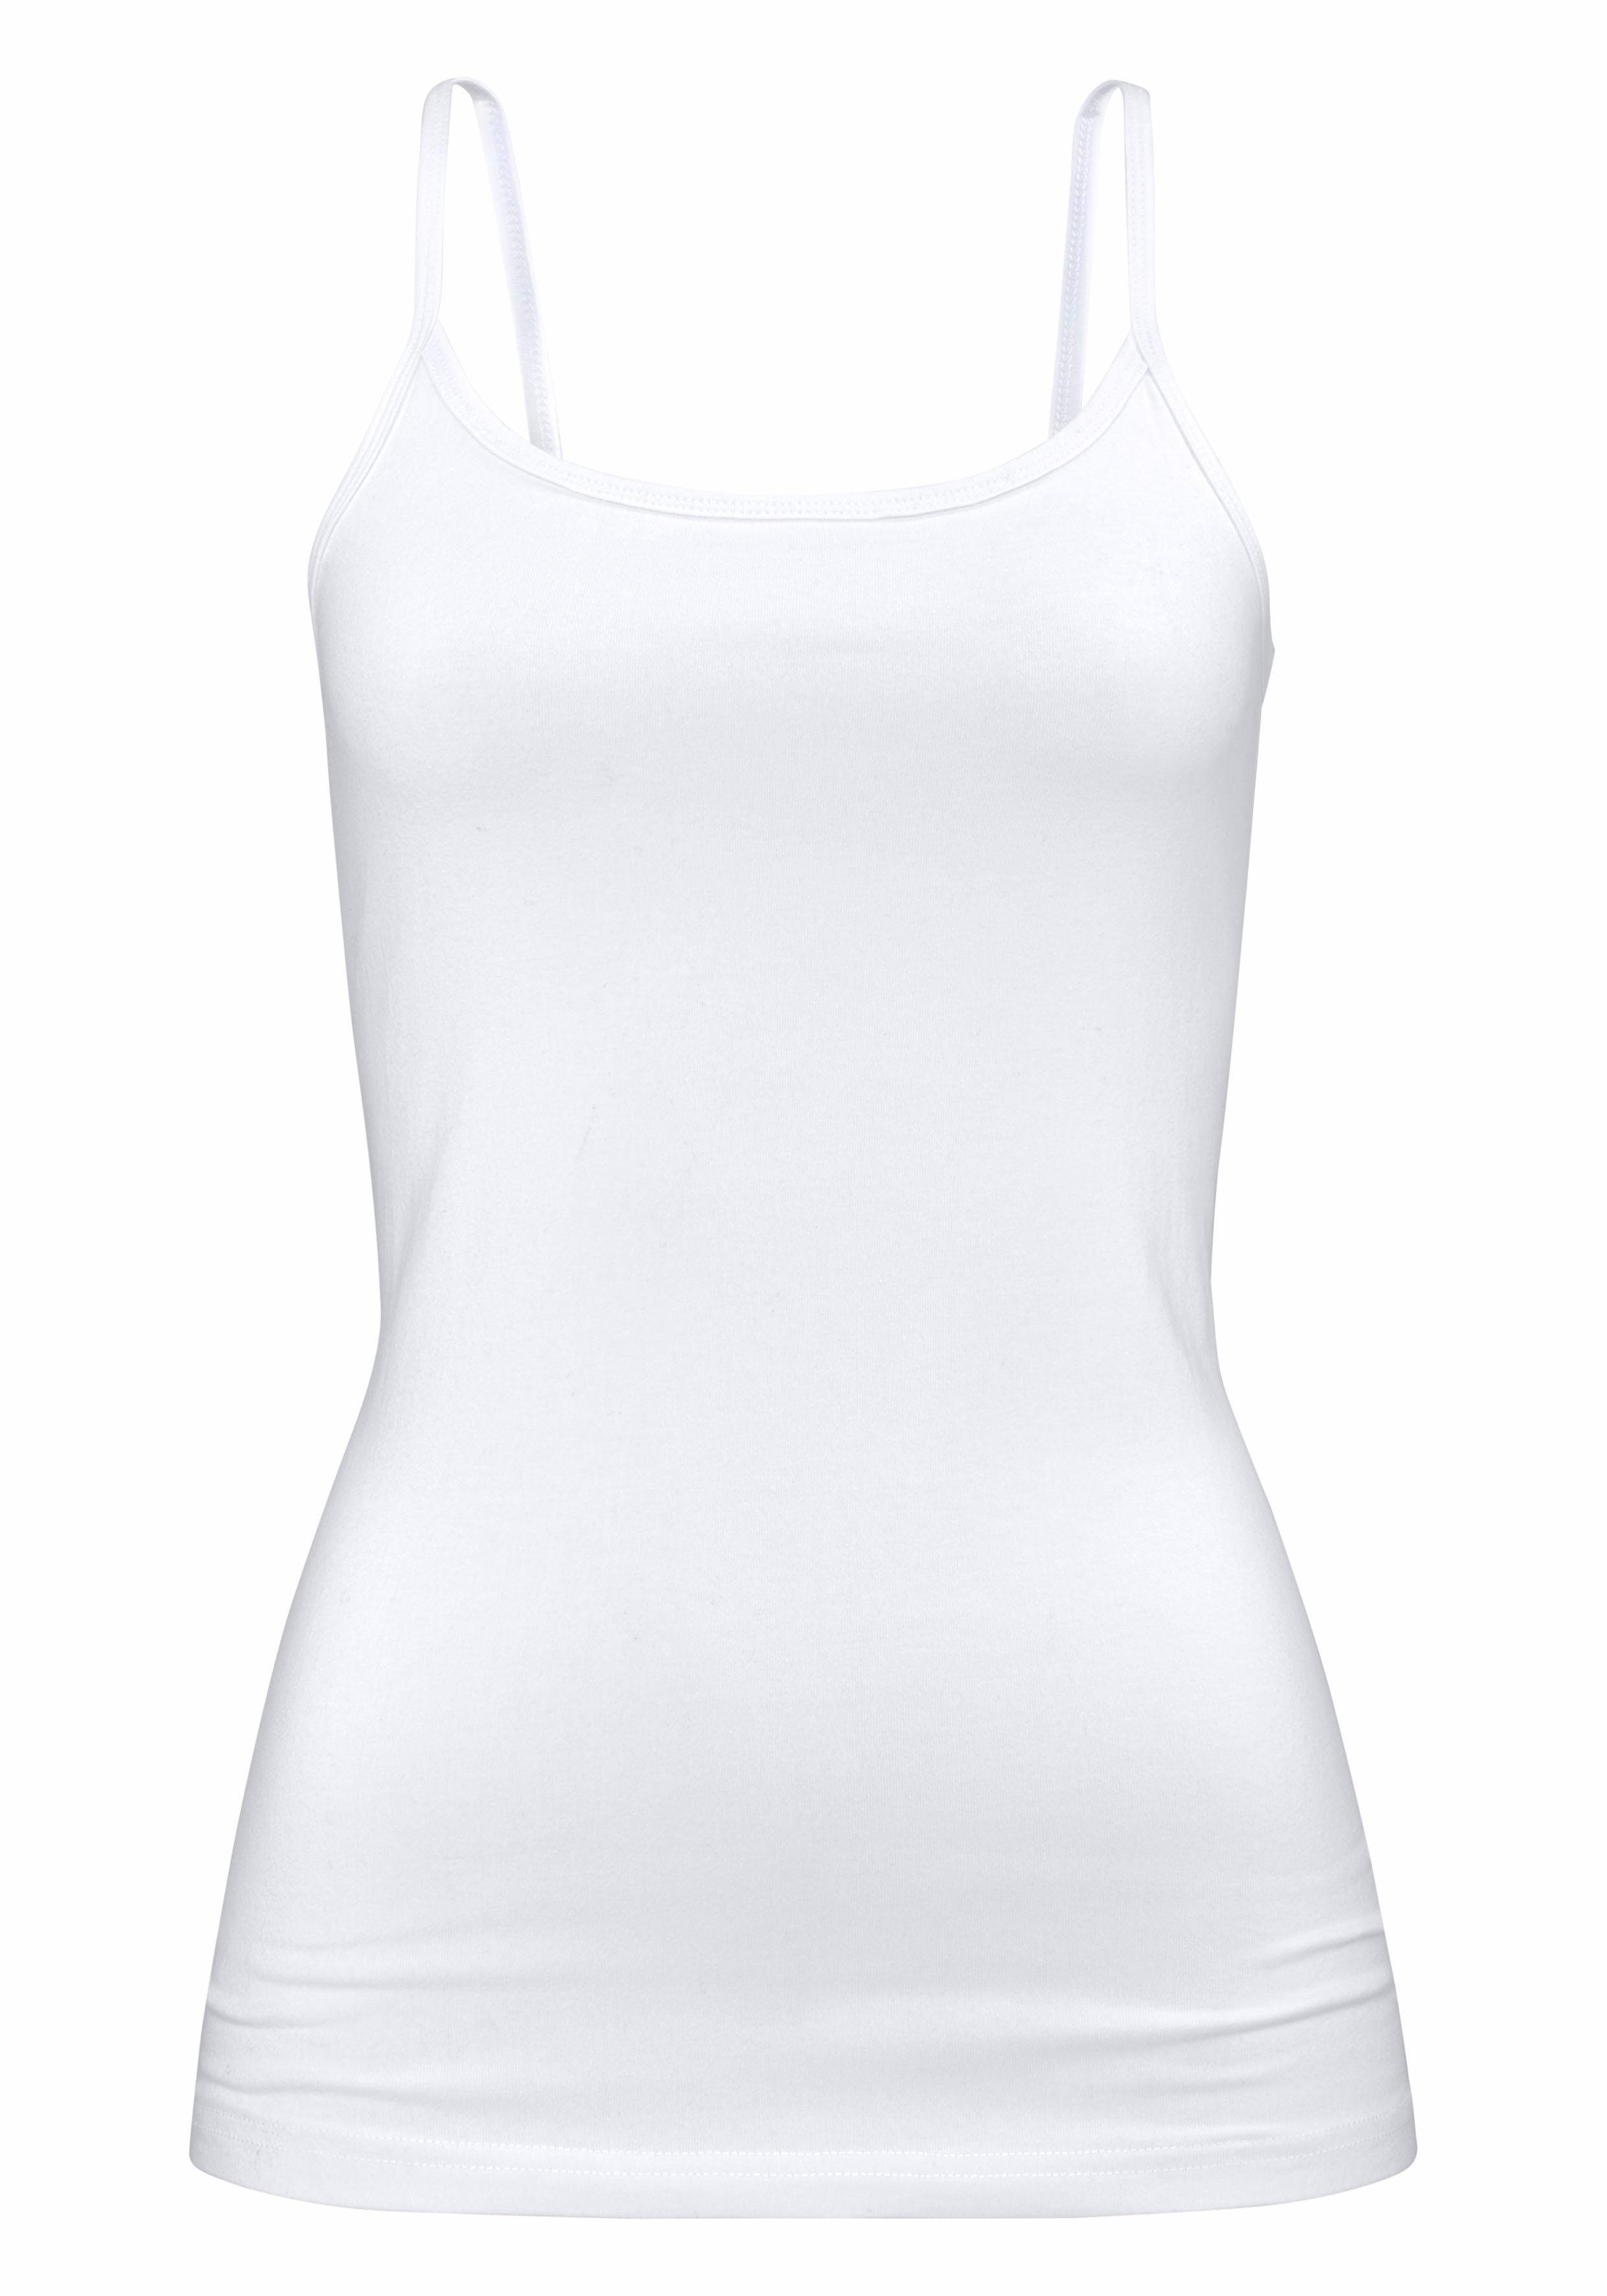 H.I.S Unterhemd elastischer Spaghettiträger-Top, marine, weiß Baumwoll-Qualität, Unterziehshirt (2er-Pack) aus